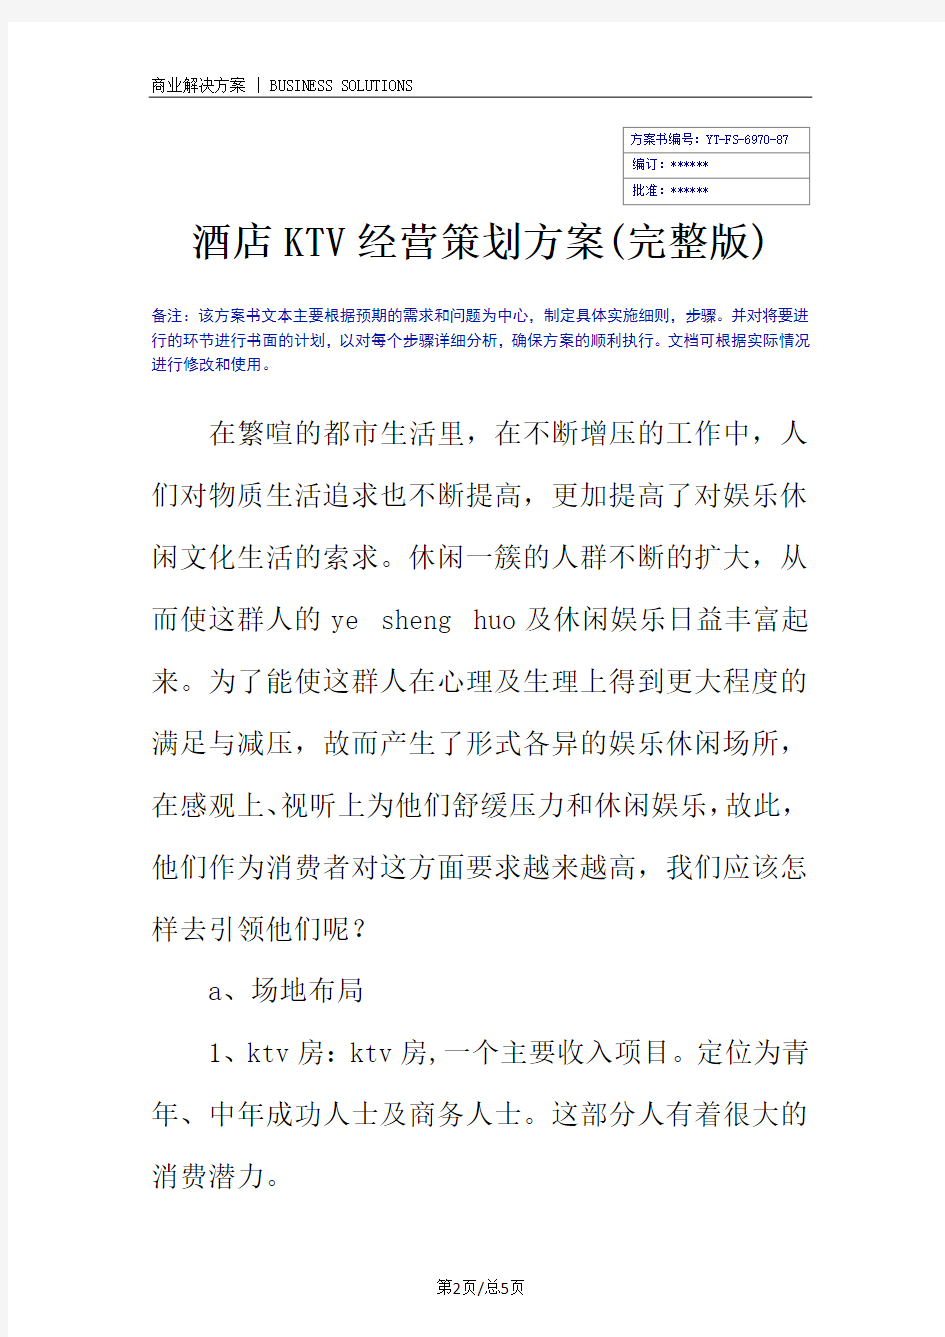 酒店KTV经营策划方案(完整版)